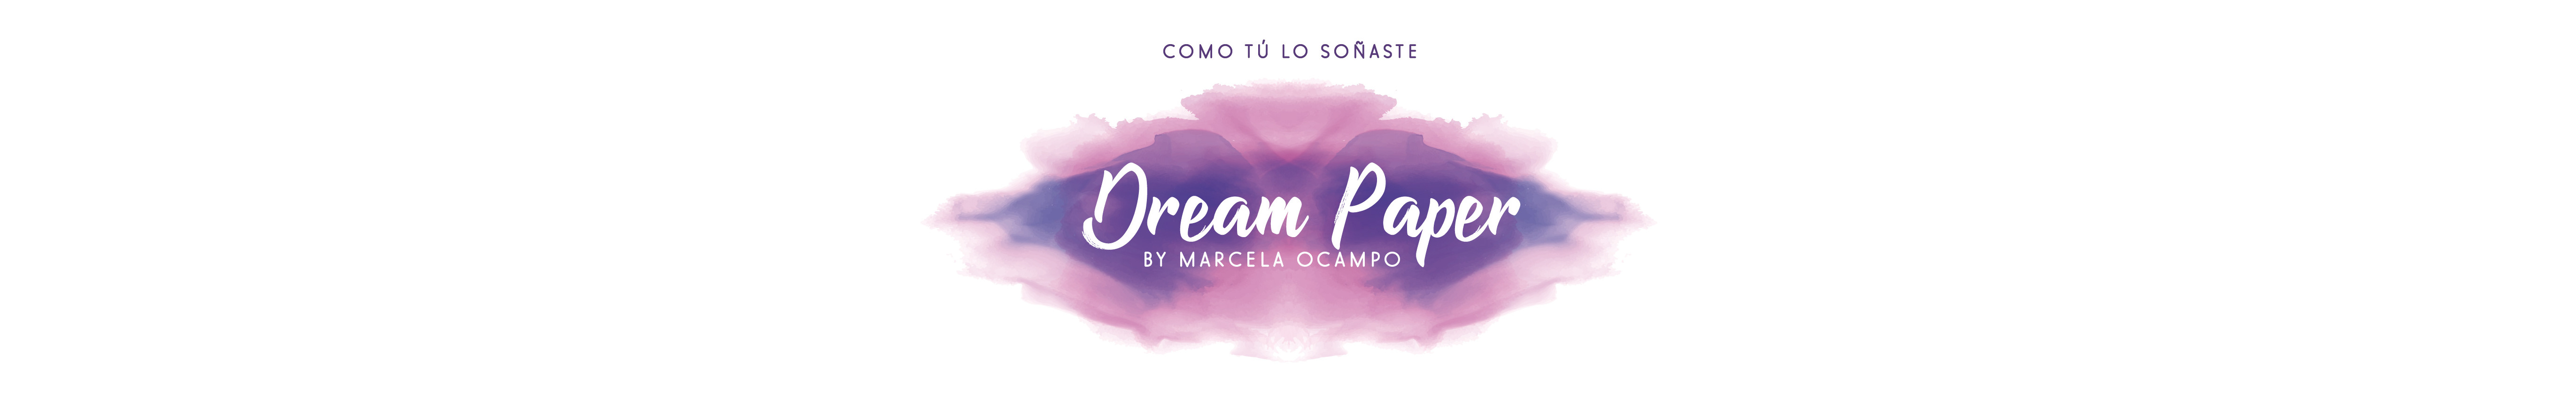 Marcela Ocampo's profile banner